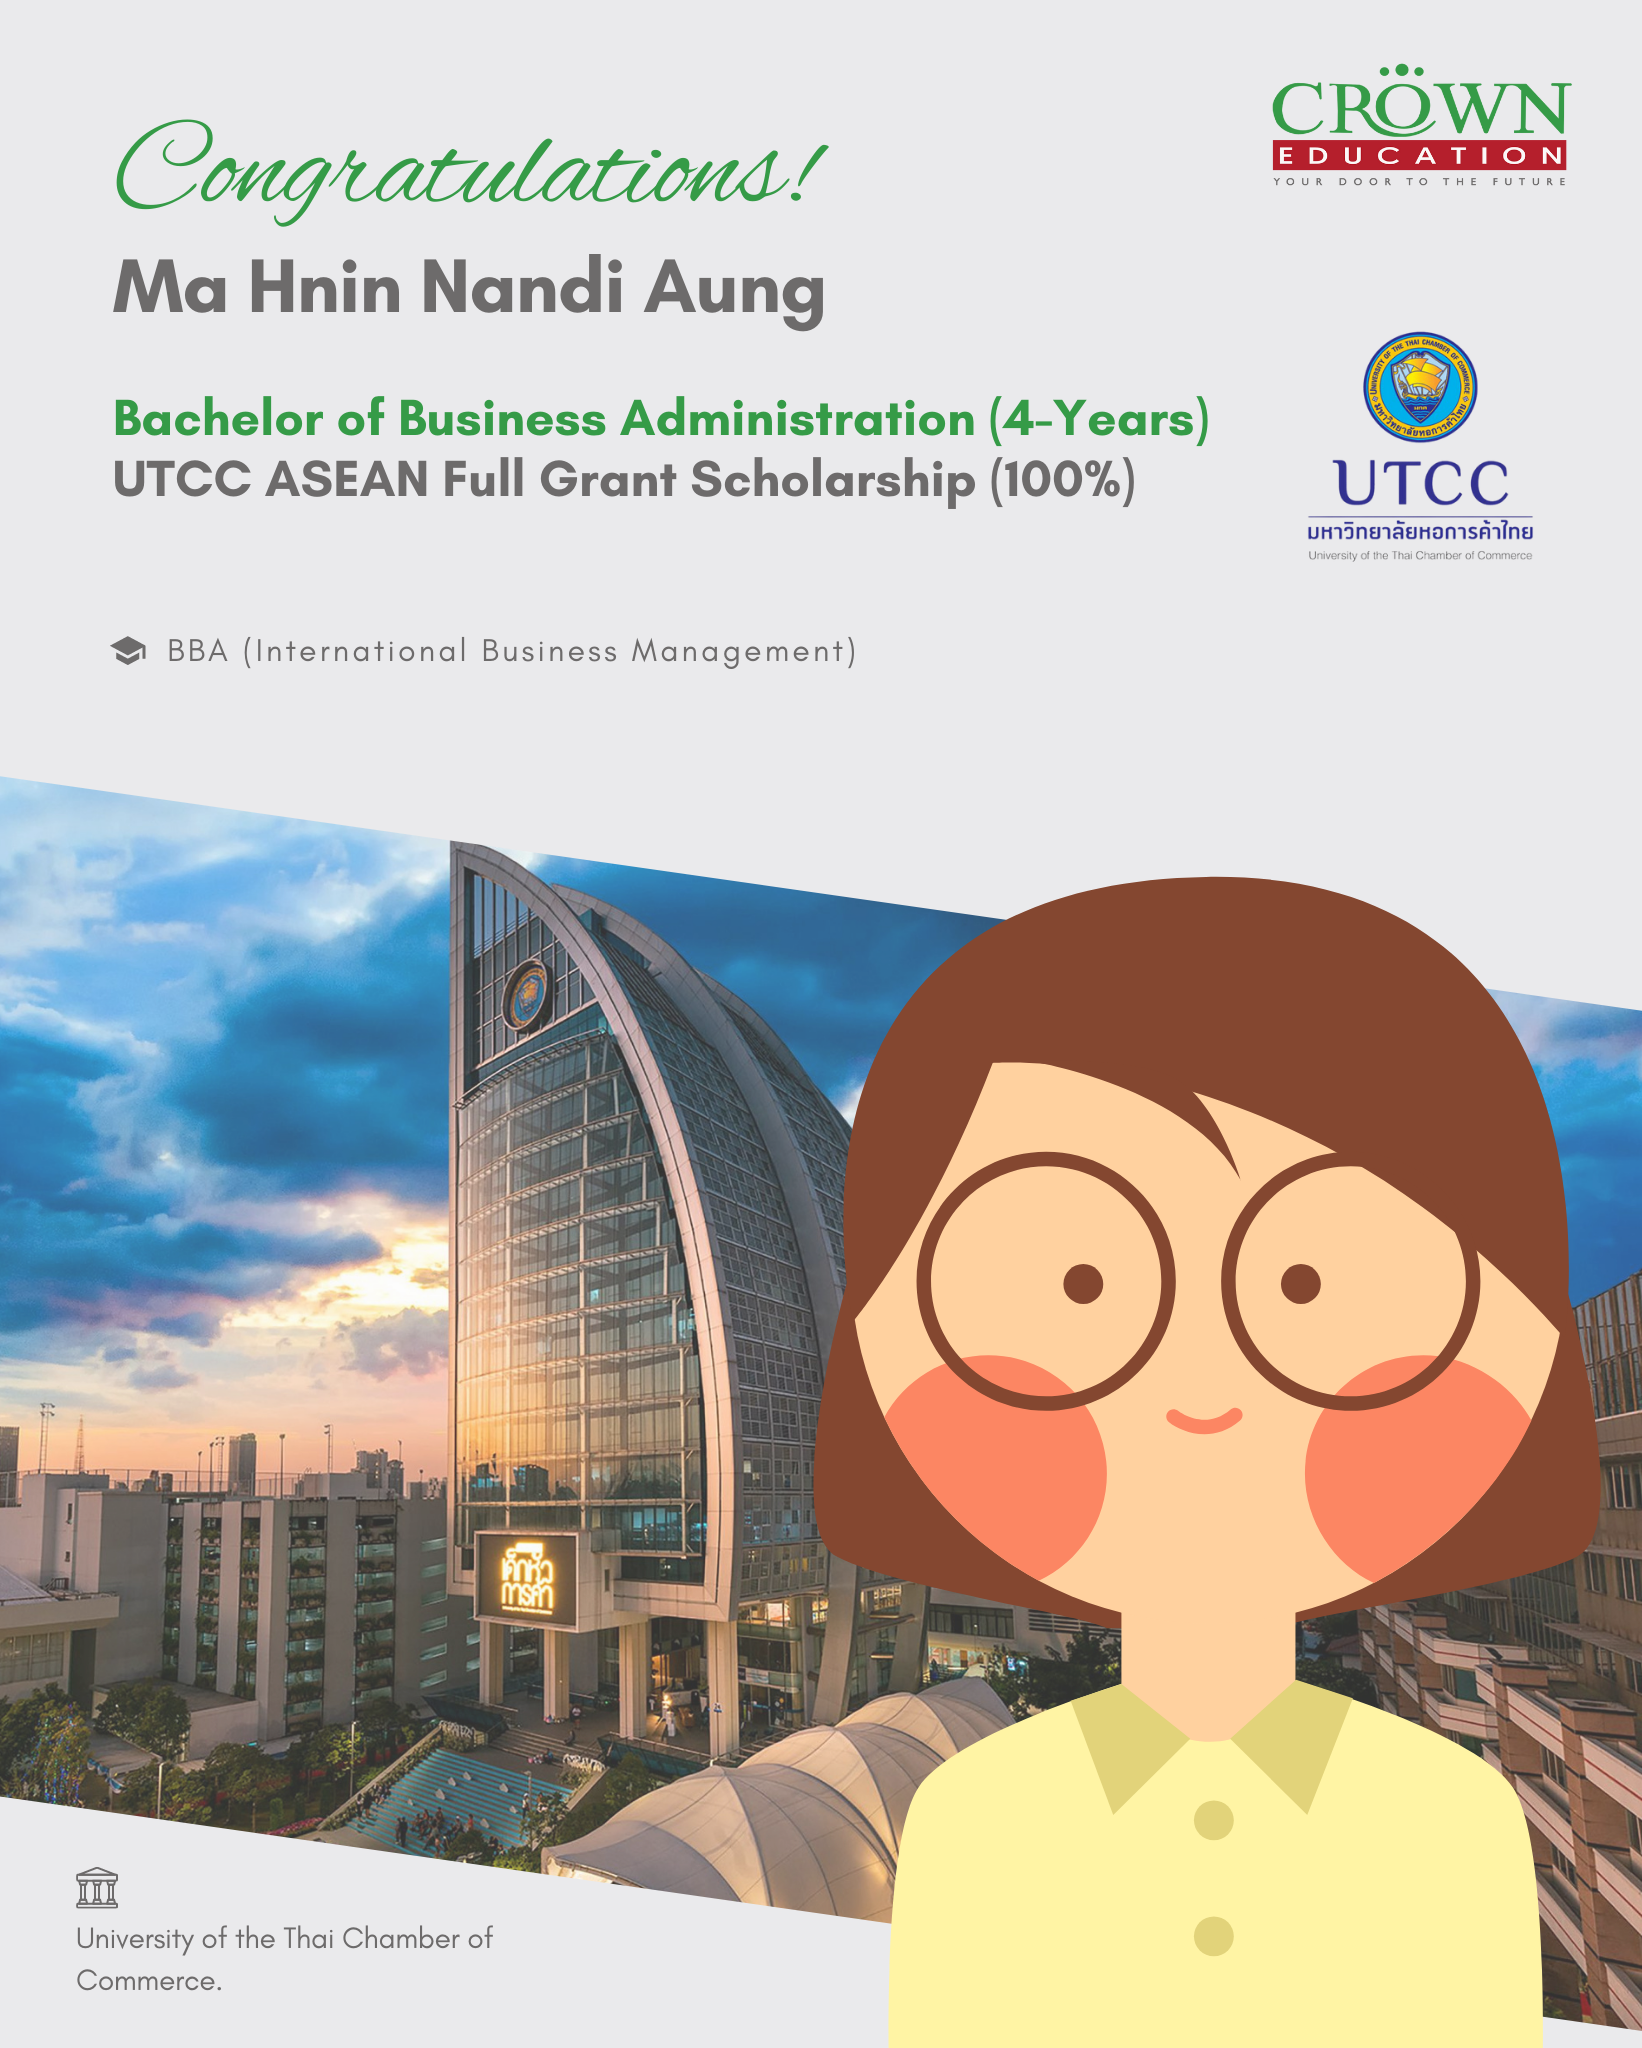 ❝ထိုင်းနိုင်ငံရှိ UNIVERSITY OF THE THAI CHAMBER OF COMMERCE တွင် UTCC ASEAN FULL GRANT SCHOLARSHIP ဖြင့် တက္ကသိုလ် (၄)နှစ်စာ သင်ကြားခွင့်ရရှိသည့် မနှင်းနဒီအောင်❞